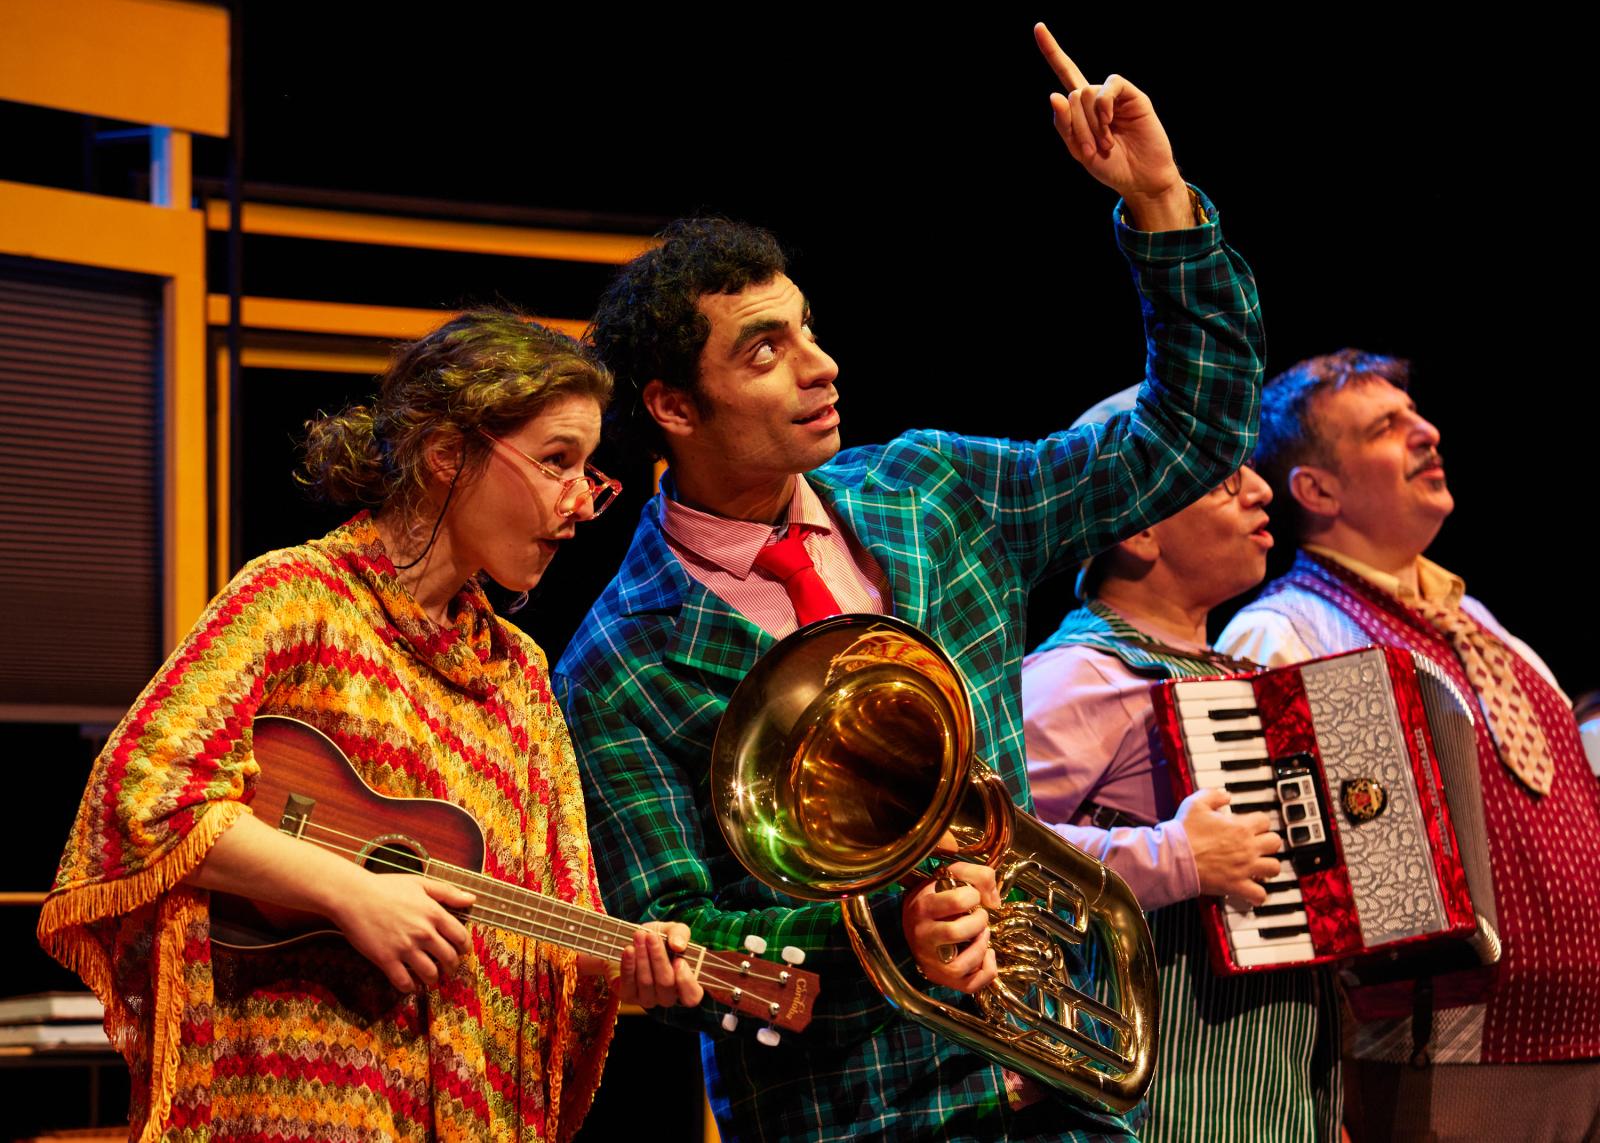 Η παράσταση "Απαγορεύεται η μουσική" από την Ομάδα Κοπέρνικος για 2η χρονιά στο Ίδρυμα Μιχάλης Κακογιάννης